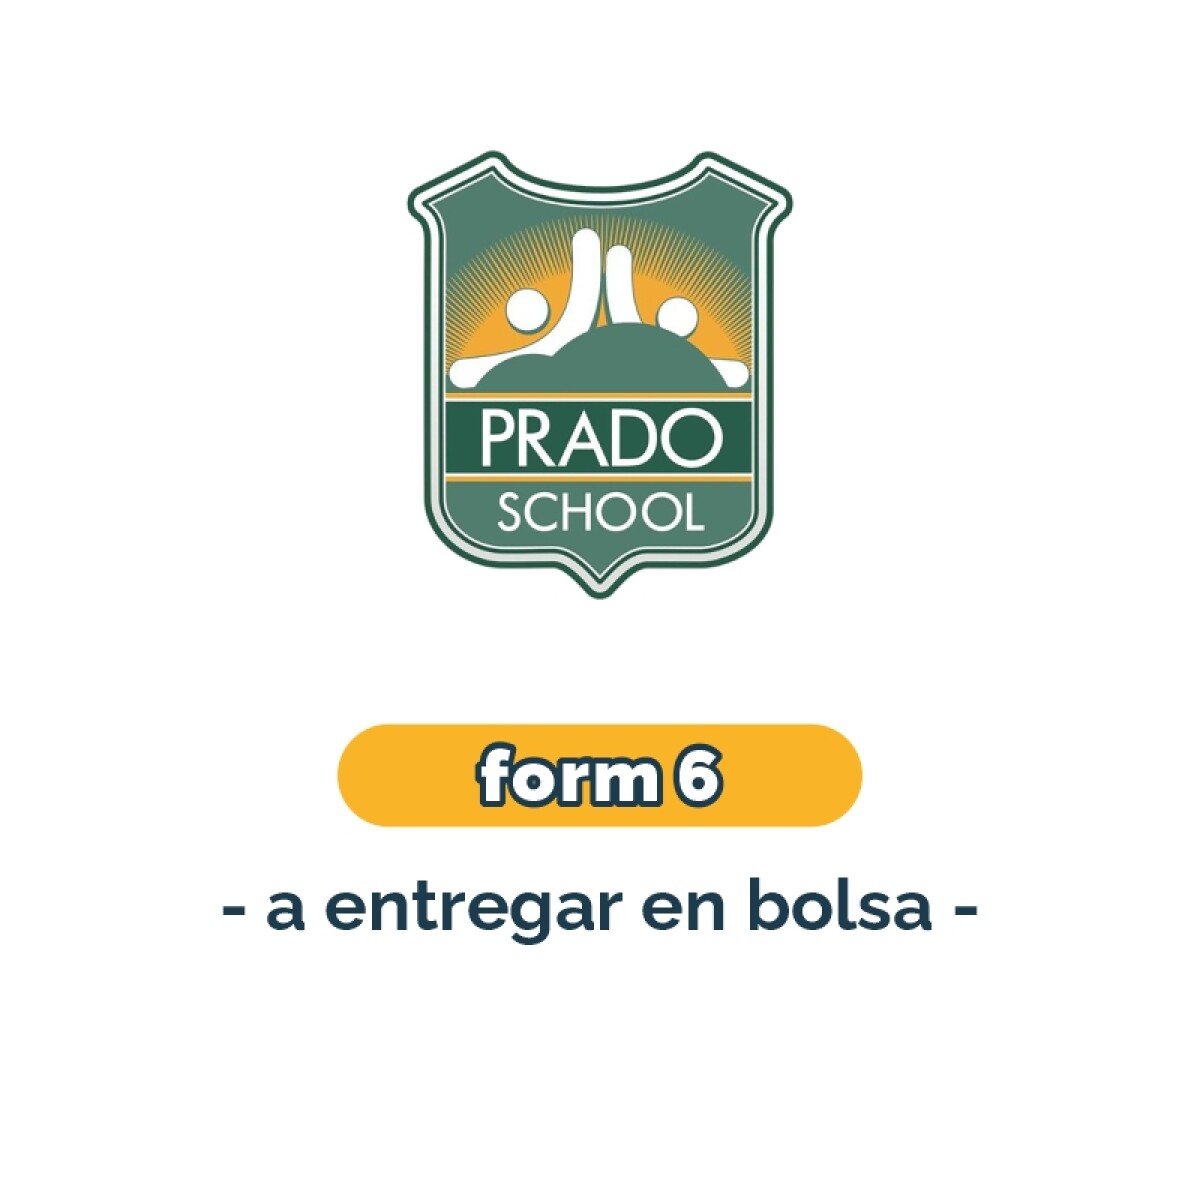 Lista de materiales - Primaria Form 6 materiales en bolsa Prado School 